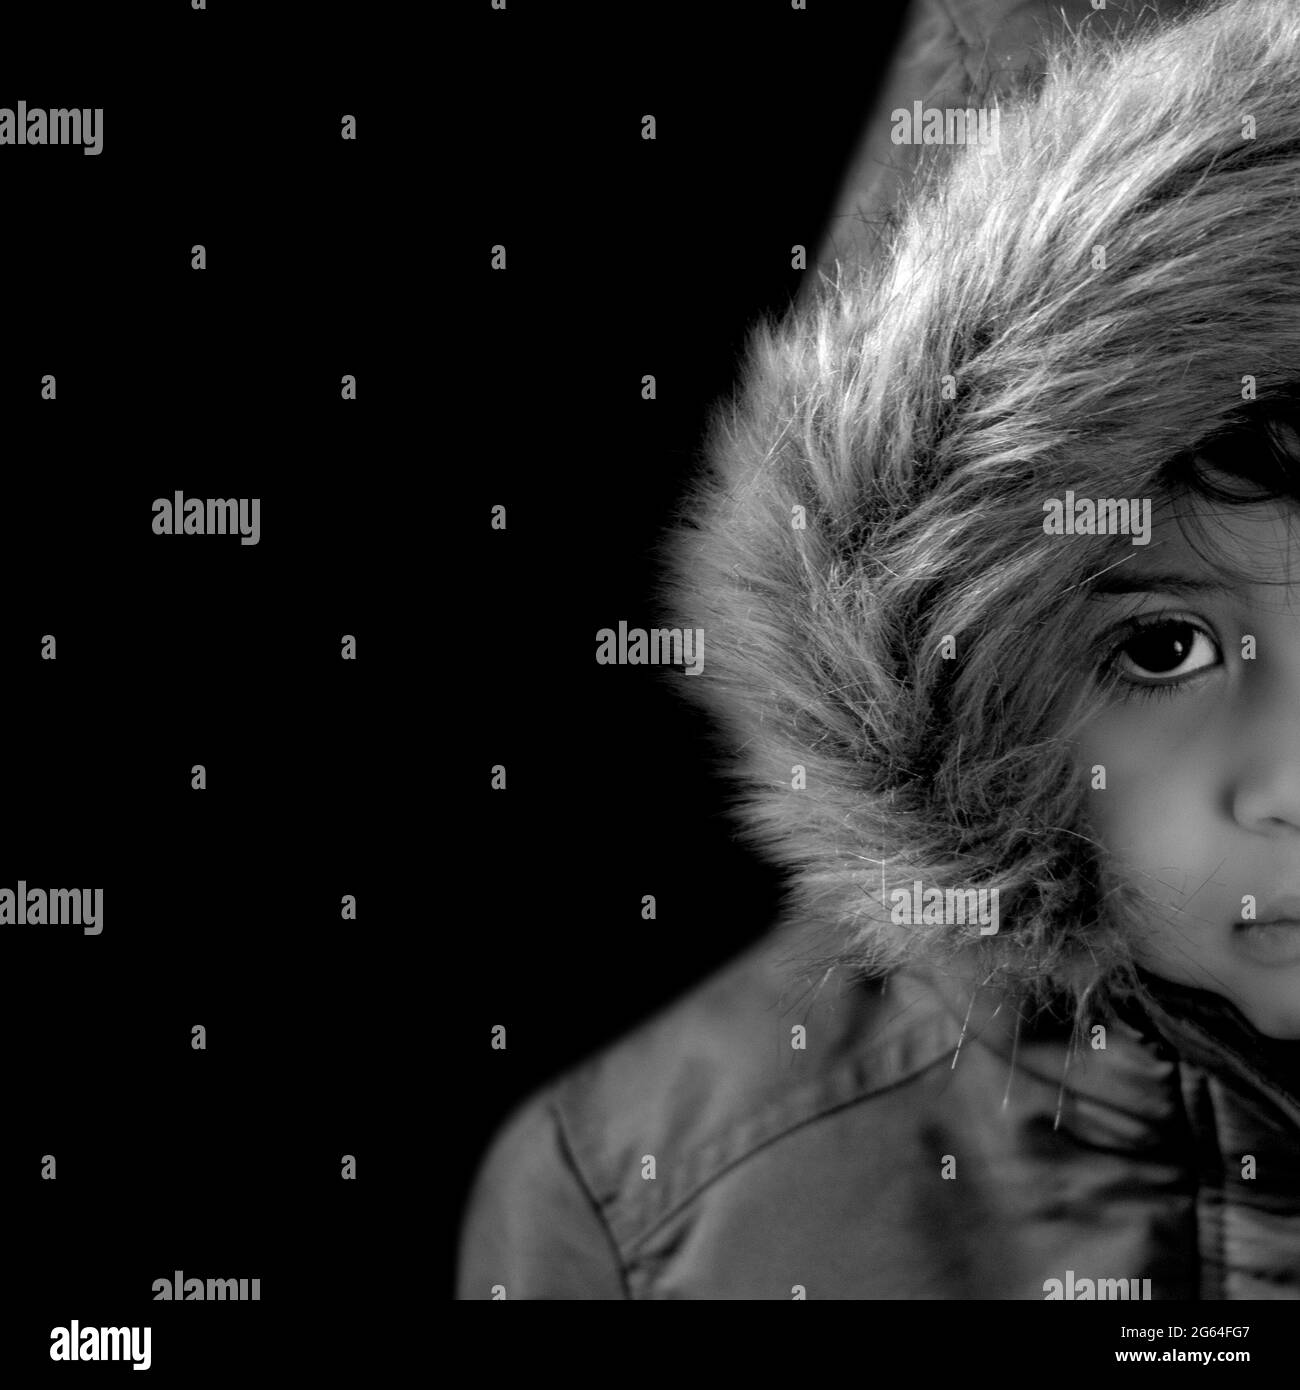 medio primo piano ritratto bambino con un parka in pelliccia cappuccio monocromatico con uno sguardo timido. copia spazio, sfondo nero Foto Stock